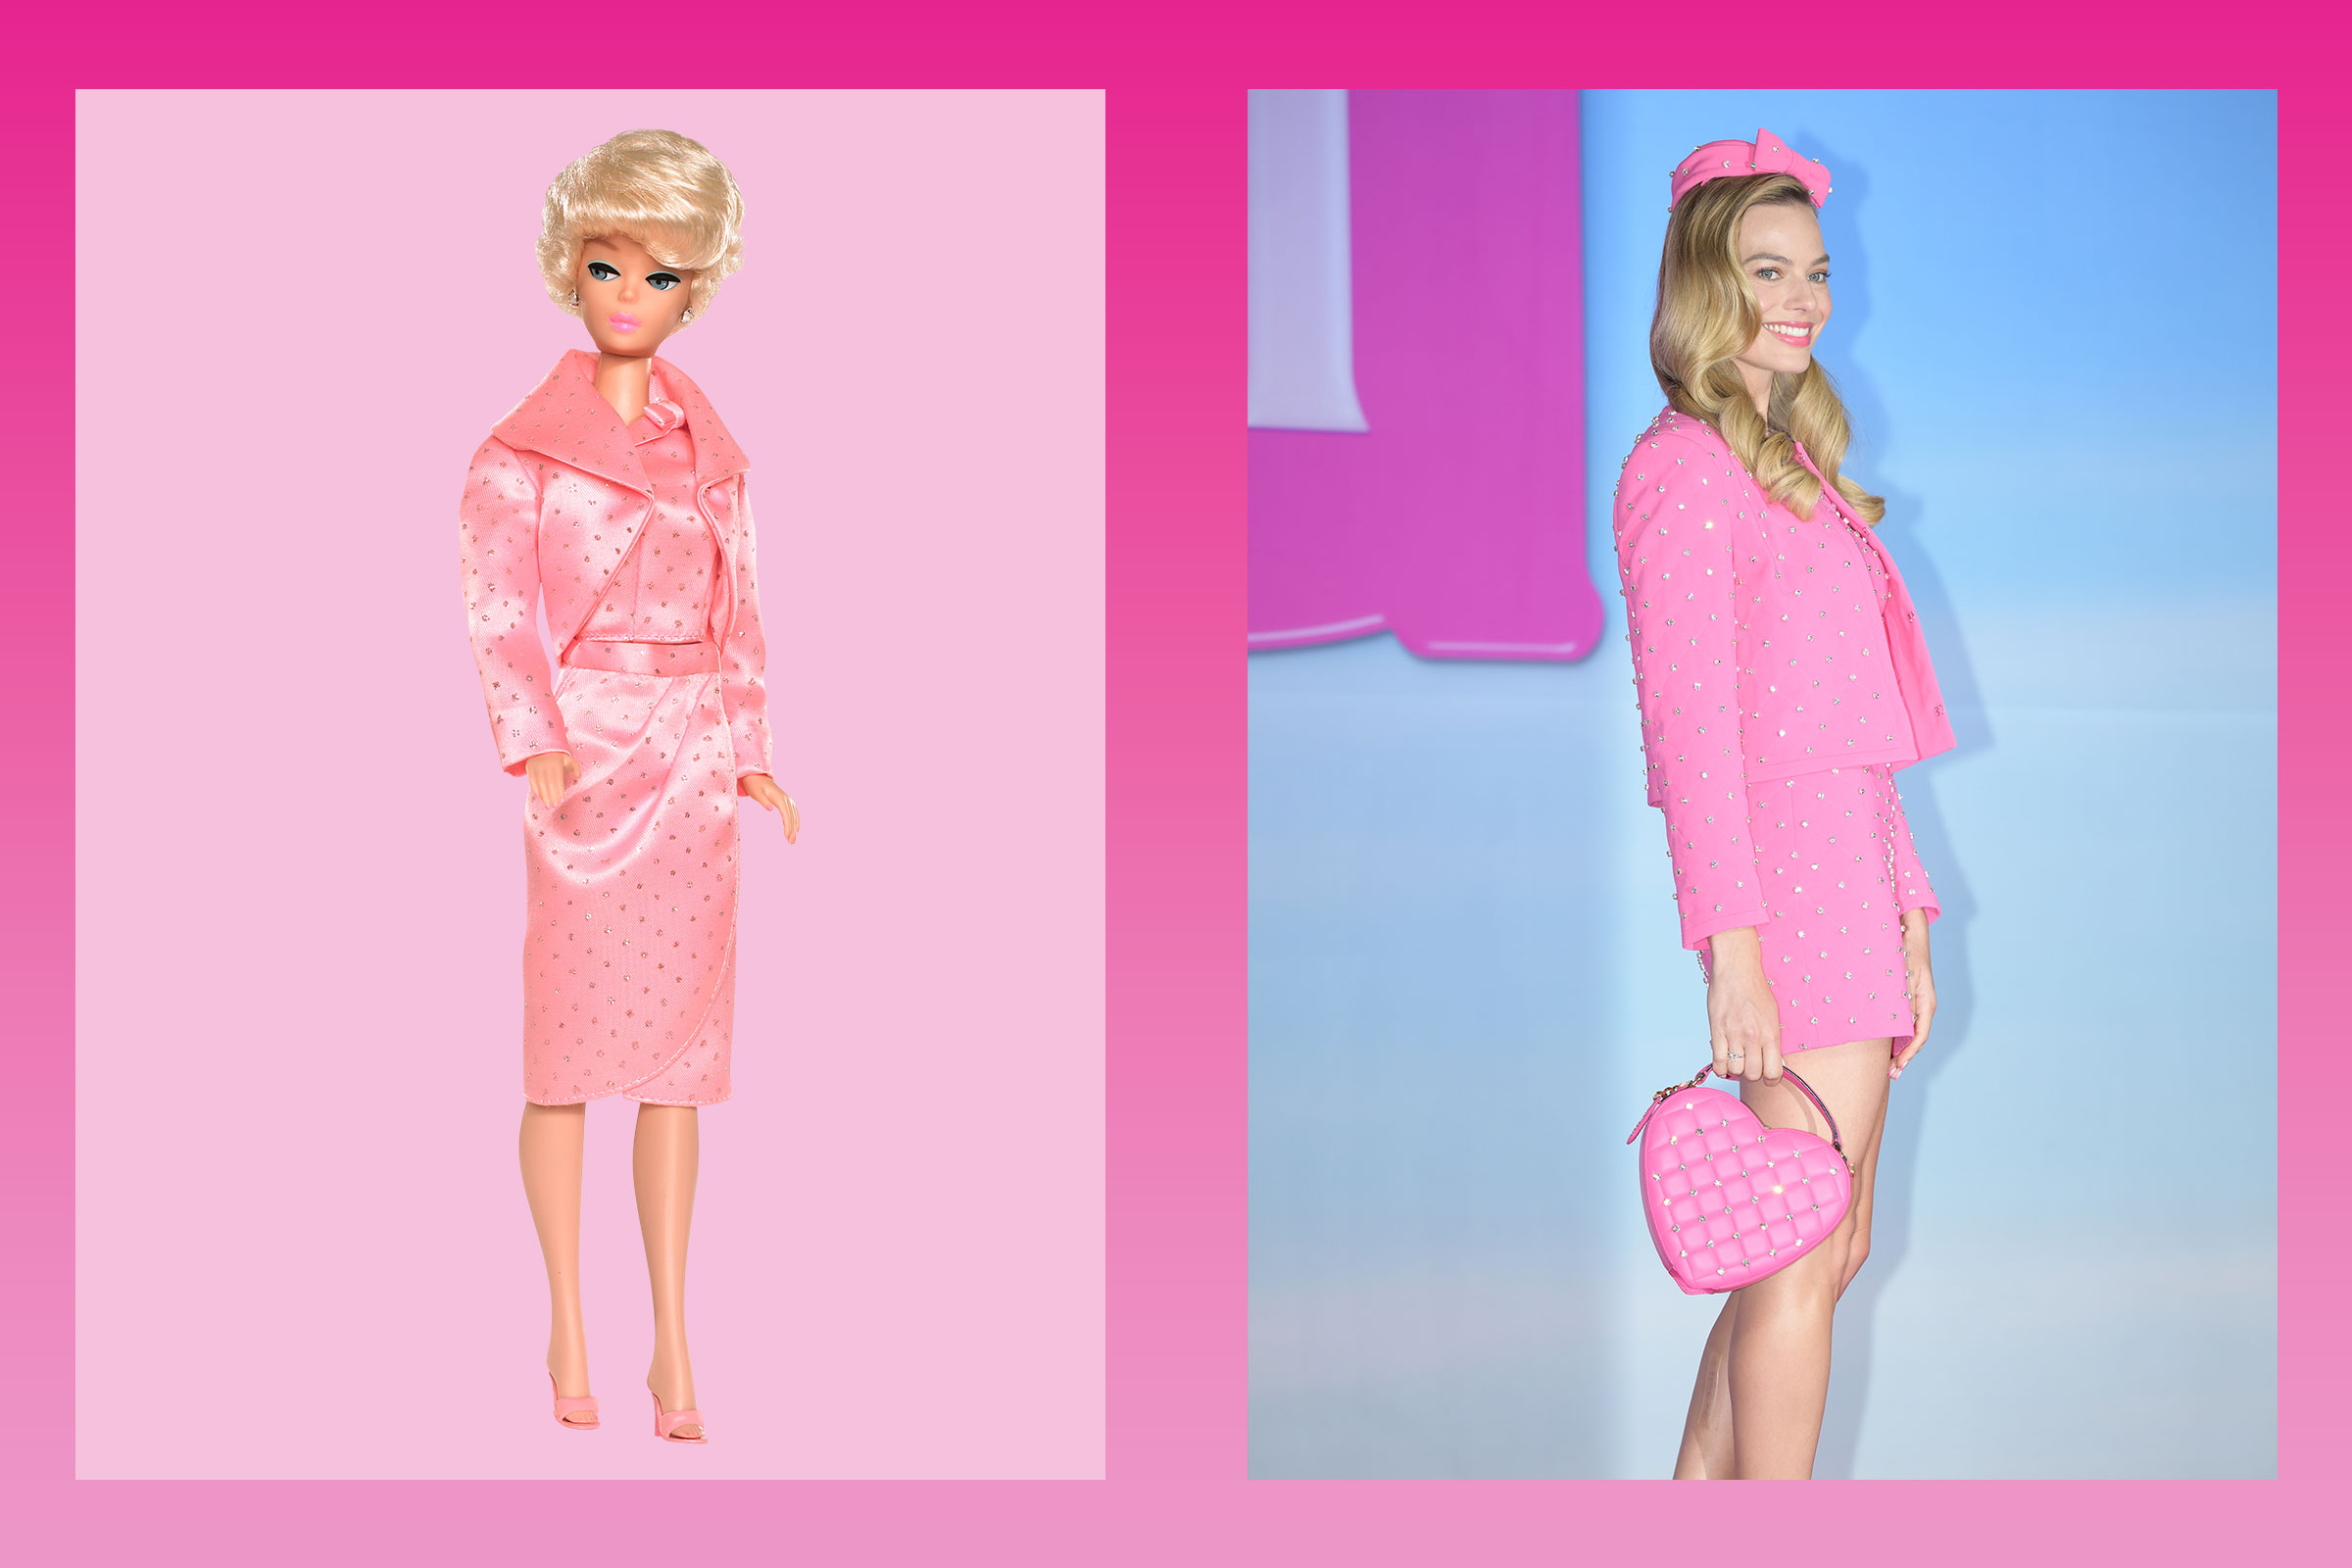 "Sparkling Pink" Barbie (Mattel Inc.; Getty Images)